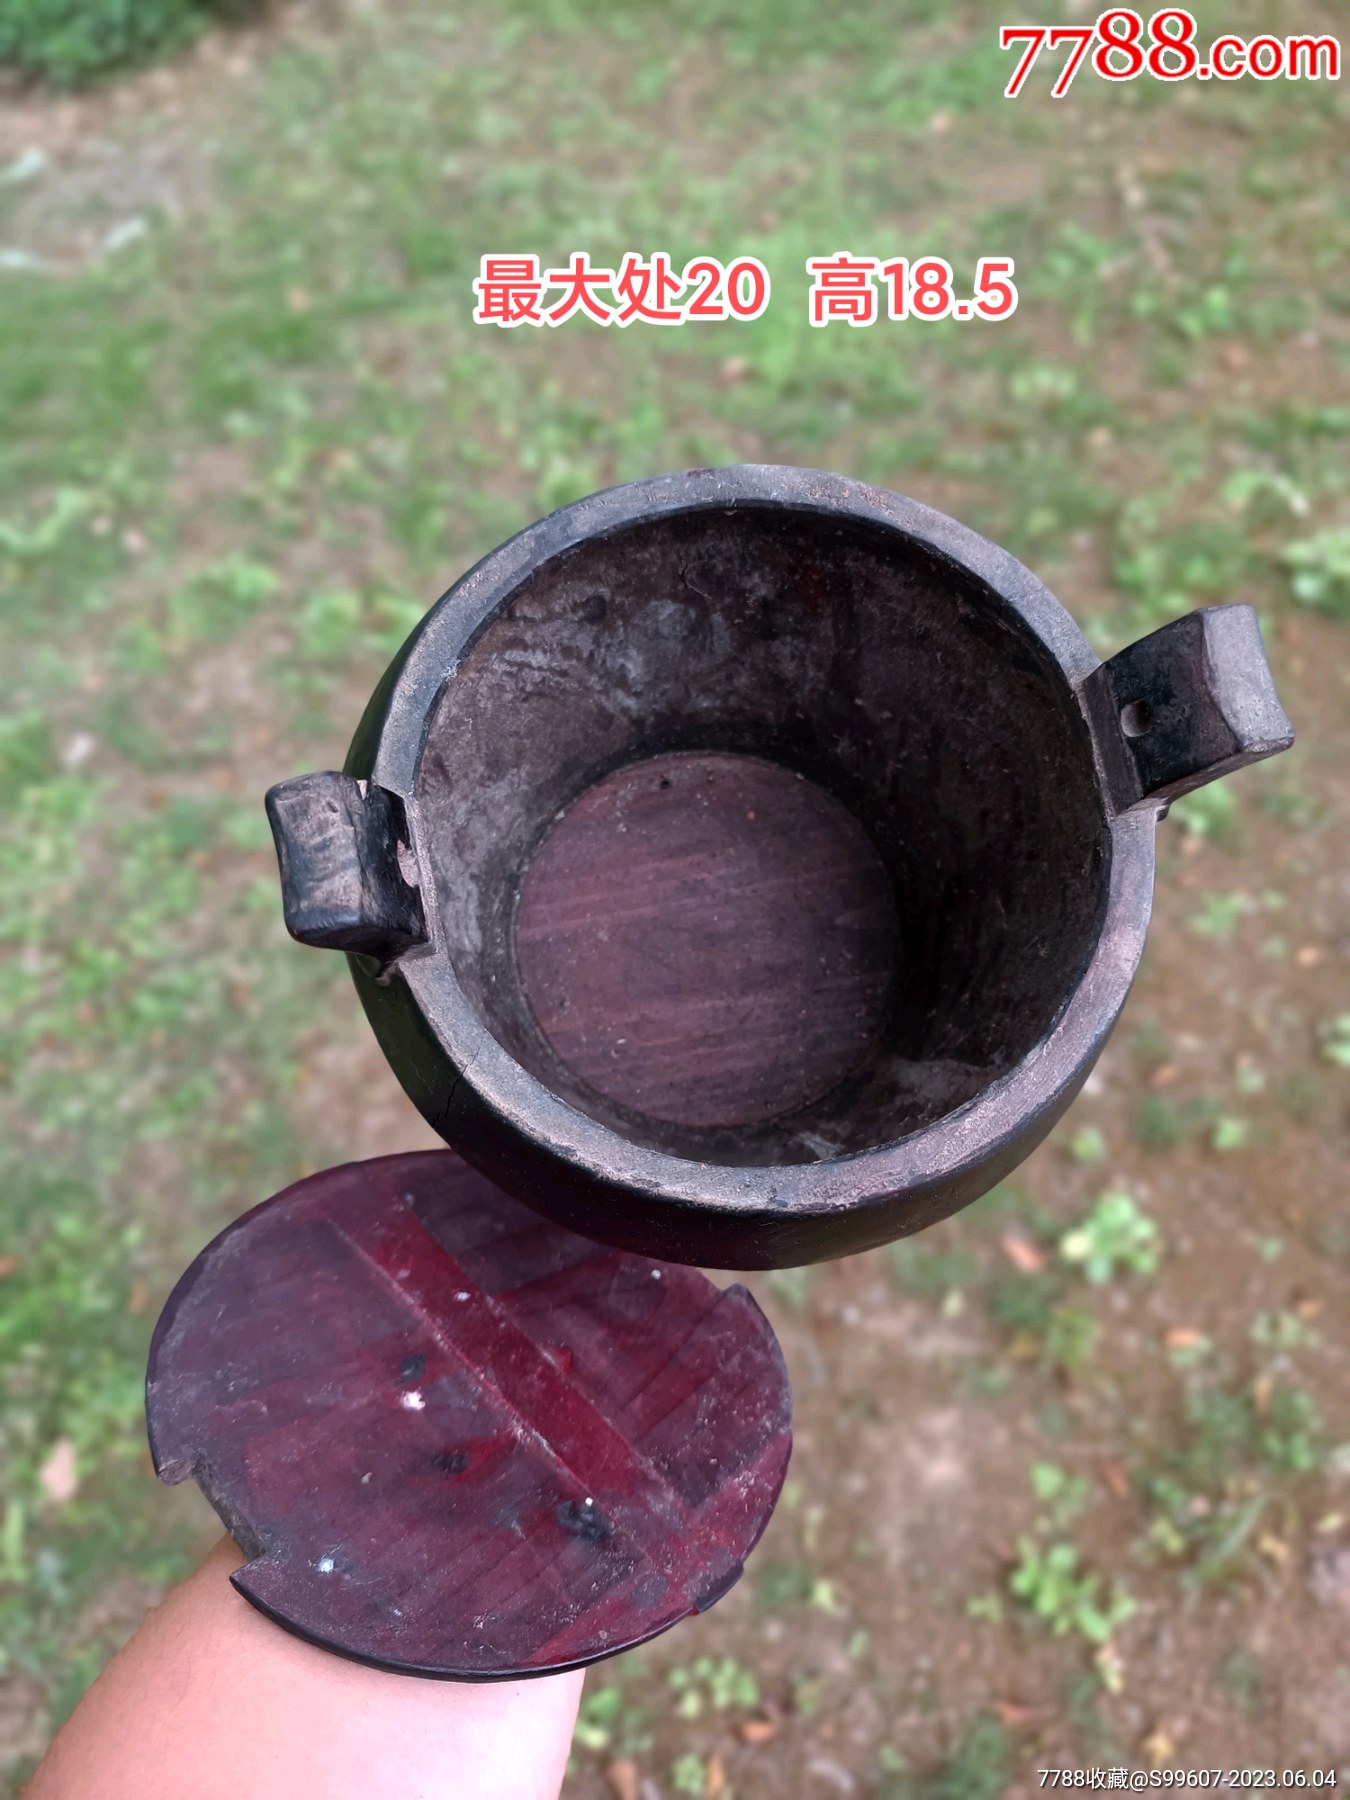 厂家生产定制各种木桶3-225l木质酒桶加工定做各种圆形木桶-阿里巴巴